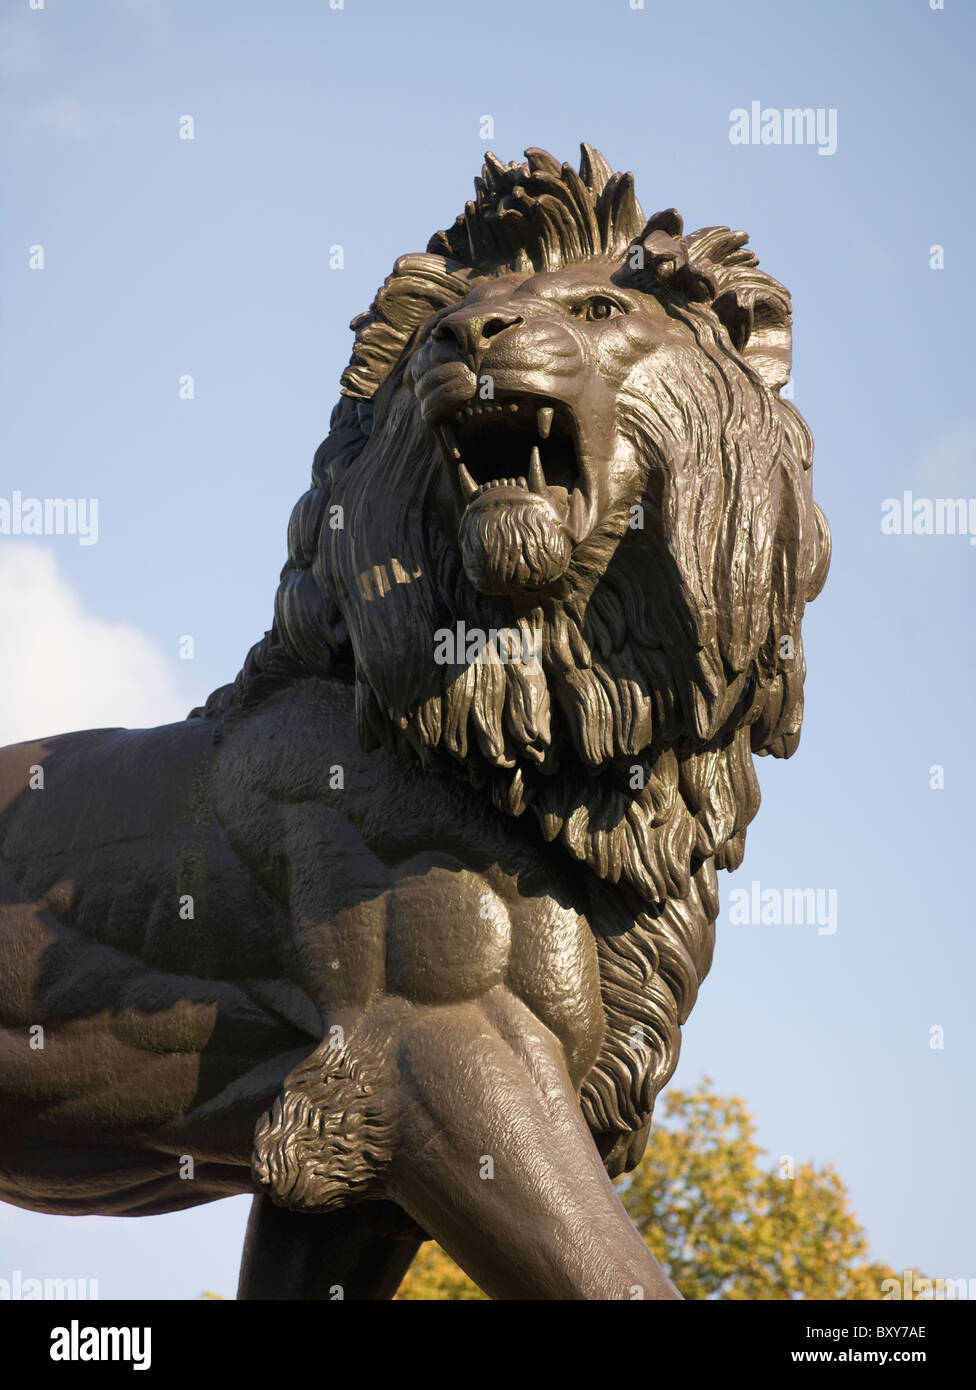 Reading, Berkshire. Forbury Square, Maiwand Denkmal für die afghanische Kampagne von 1880, warf Eisen Statue Löwen 1884-6. Stockfoto